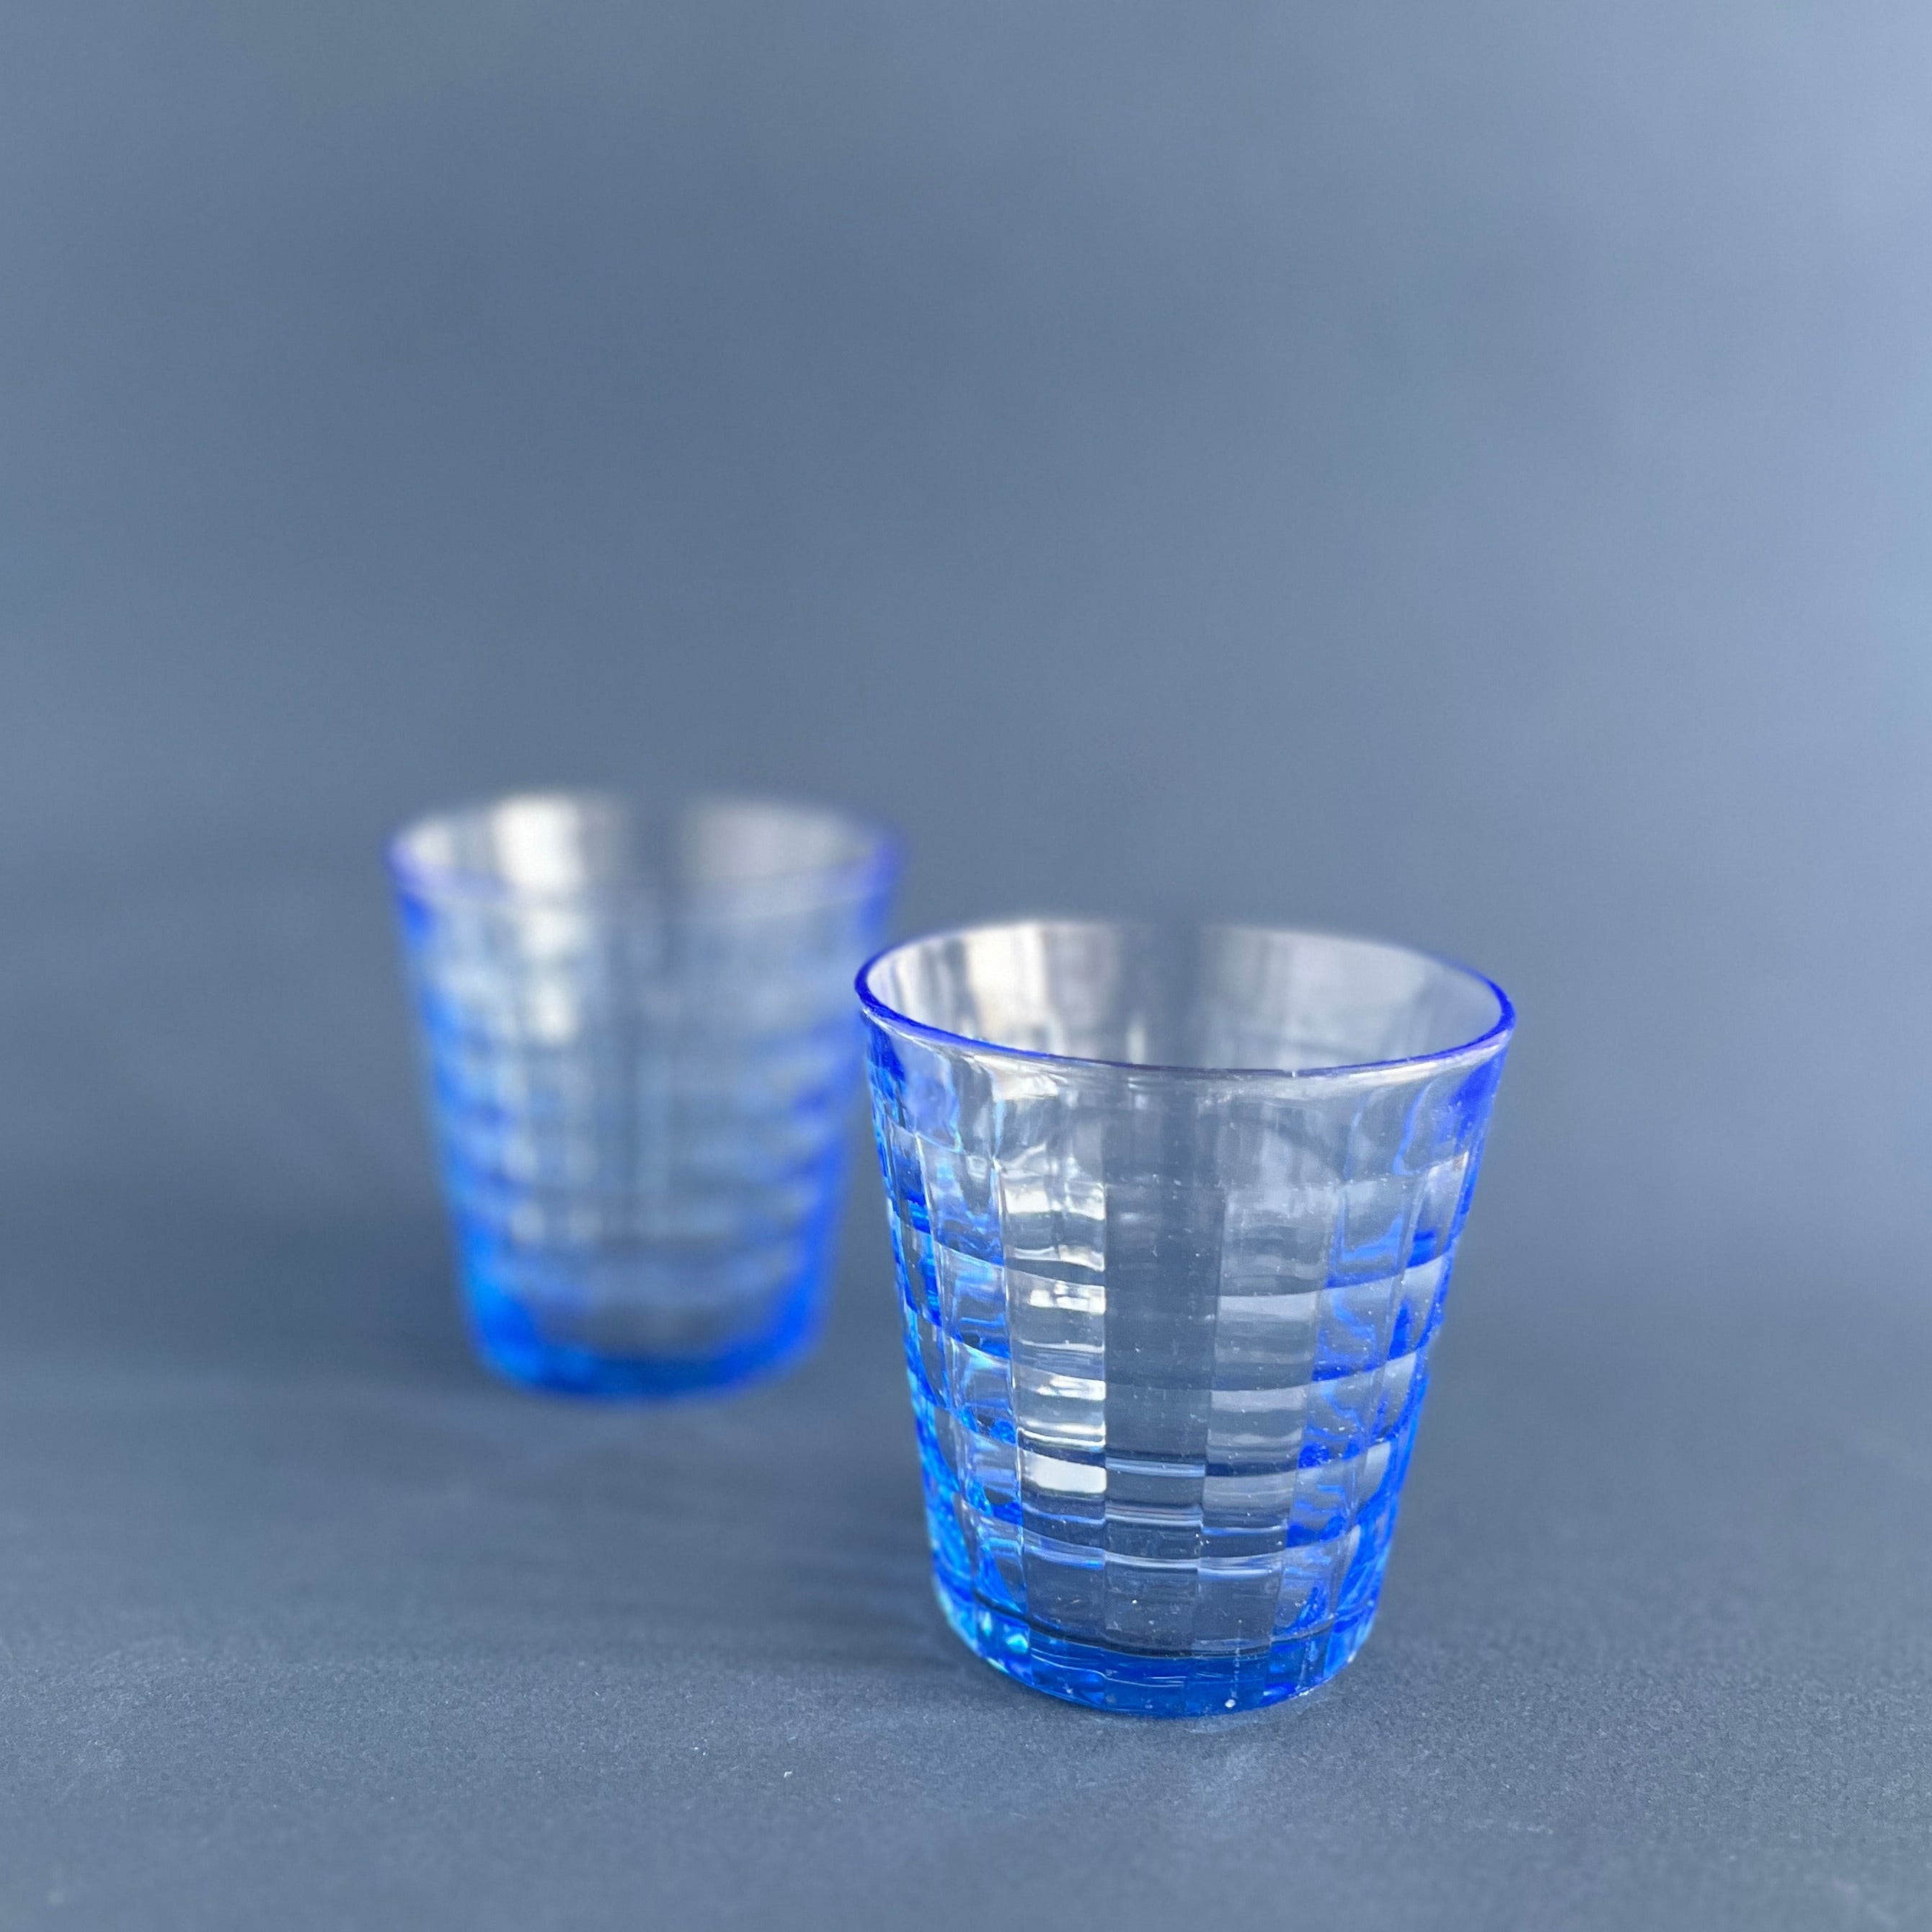 Two vintage blue Duralex glasses